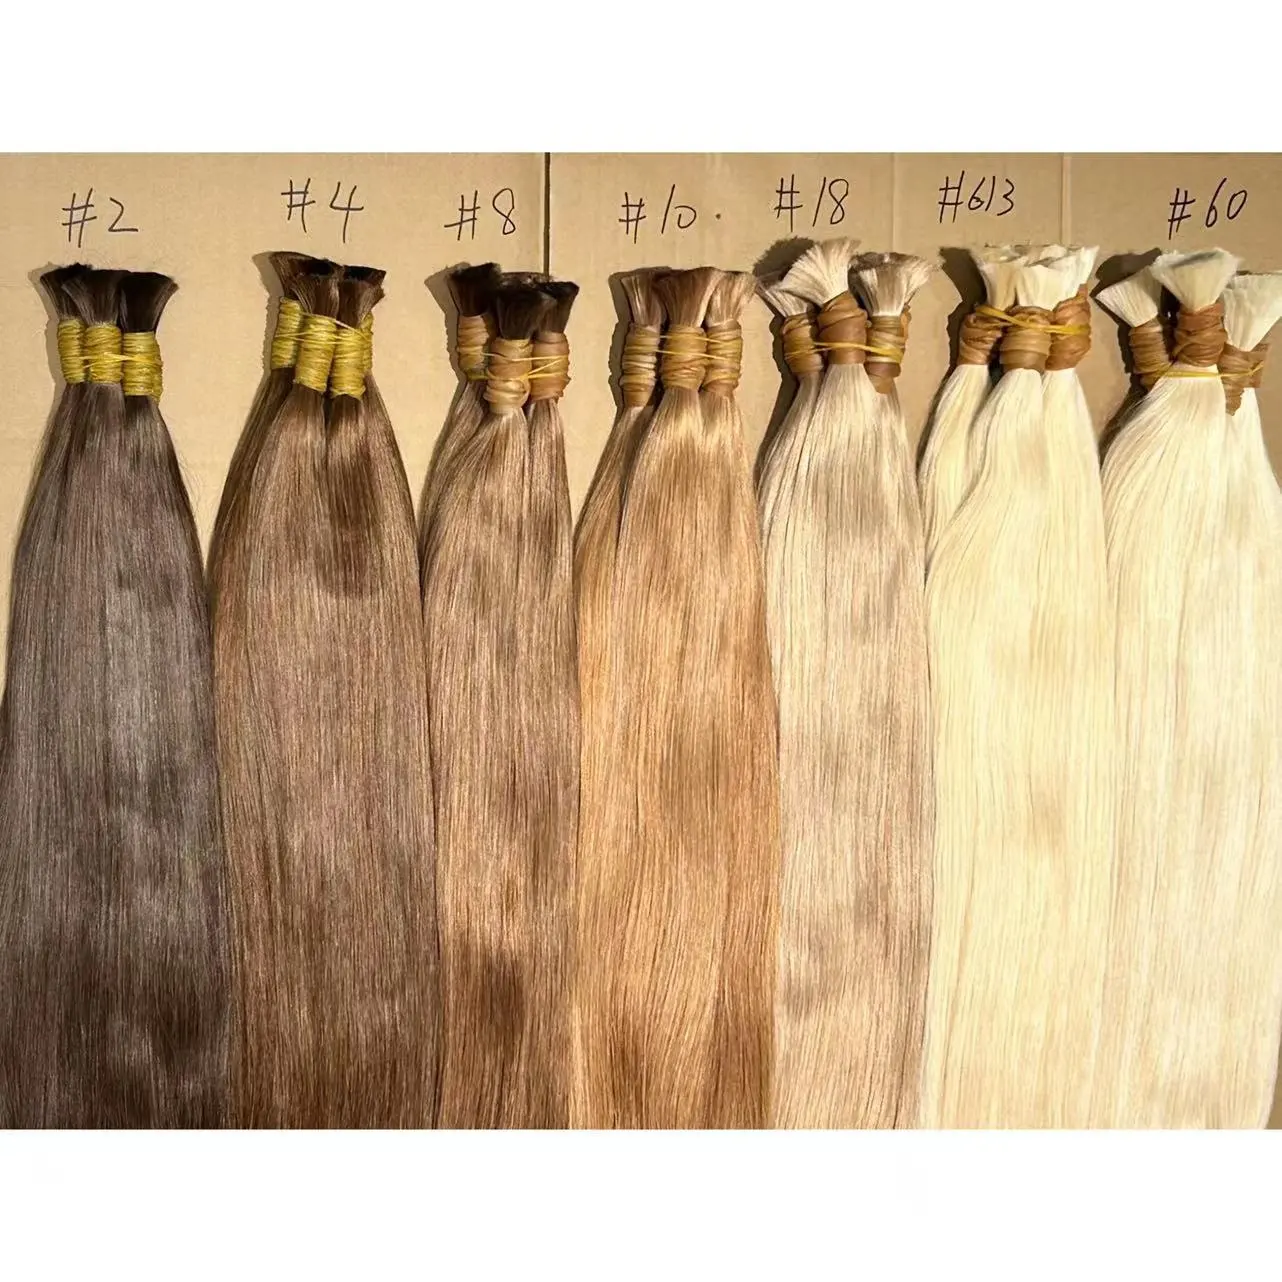 Роскошный extensiones cabello, натуральный 100% cabelo humano, необработанный, неоправленный, с оптовой ценой, Frete gratis para Brasil